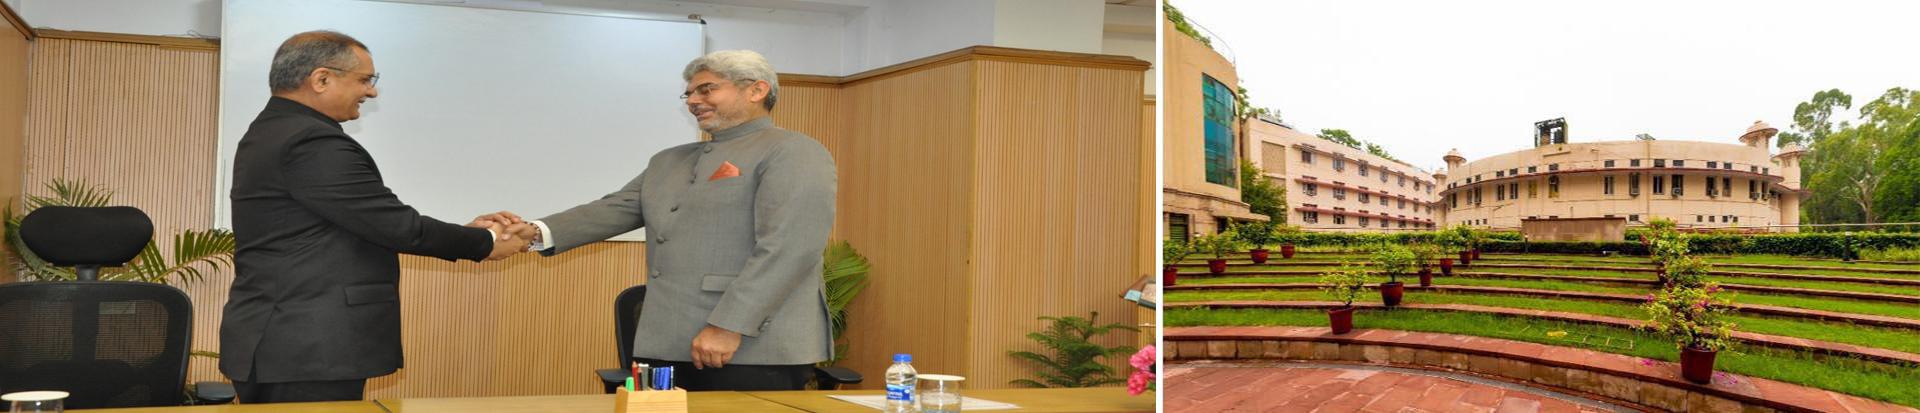 १५ जनवरी, २०२४ को शपथ ग्रहण समारोह के पश्चात माननीय अध्यक्ष डॉ. मनोज सोनी और माननीय सदस्य श्री शील वर्धन सिंह एक-दूसरे को शुभकामनाएं देते हुए।